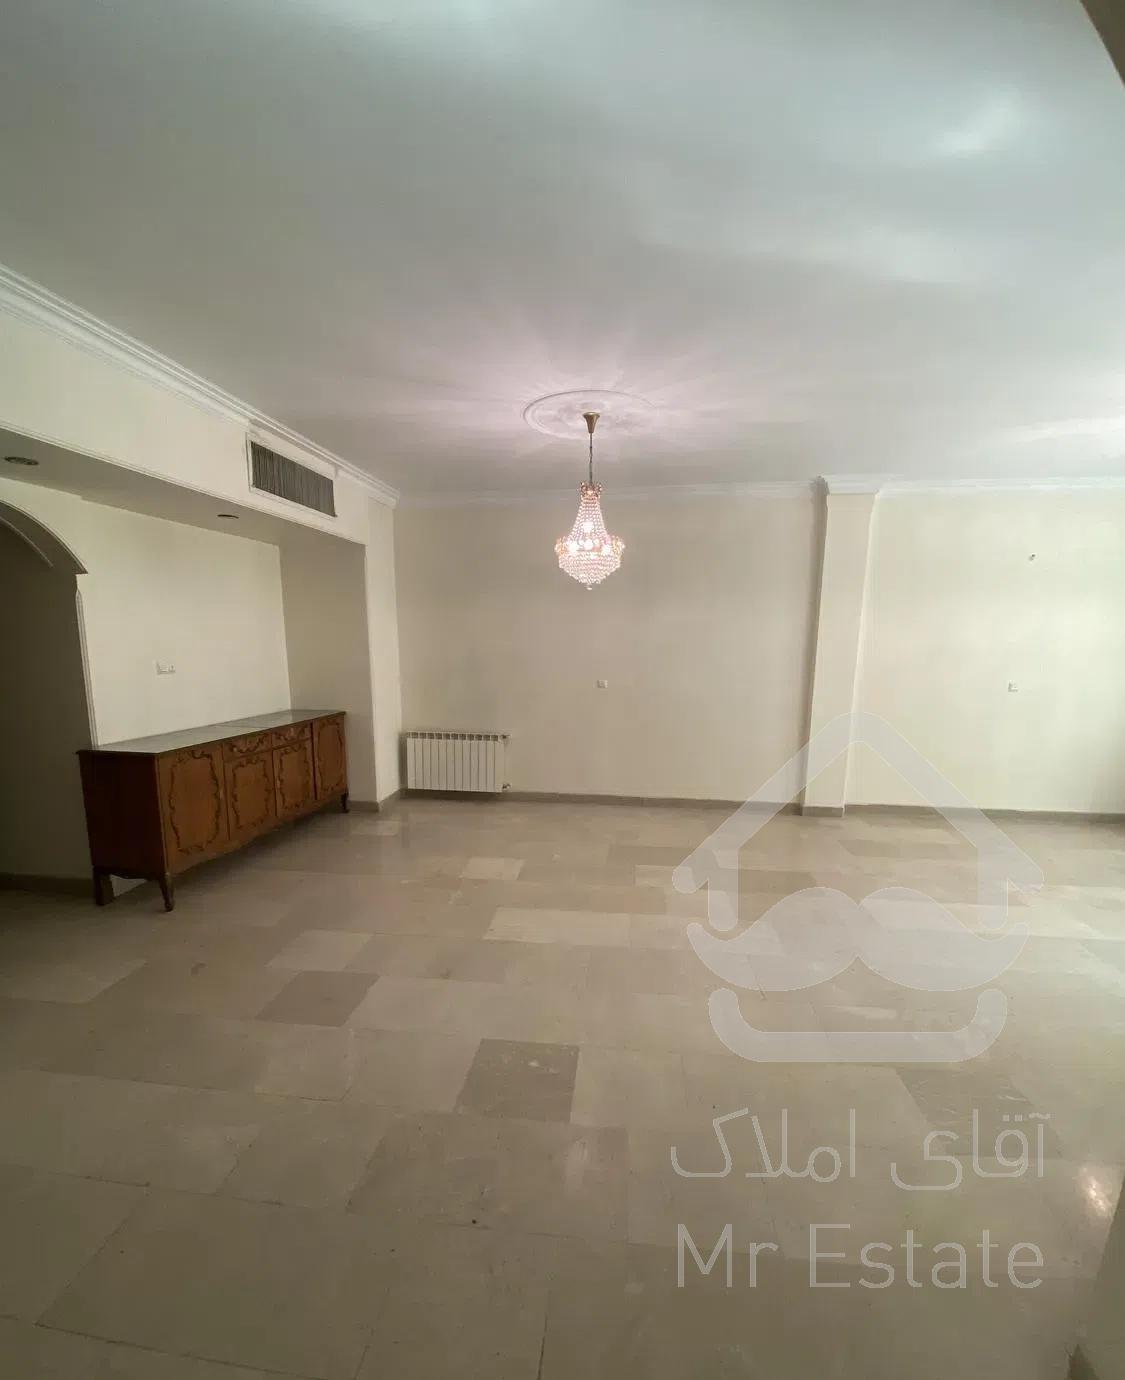 فروش آپارتمان ۱۰۵ متری خواجه عبدالله